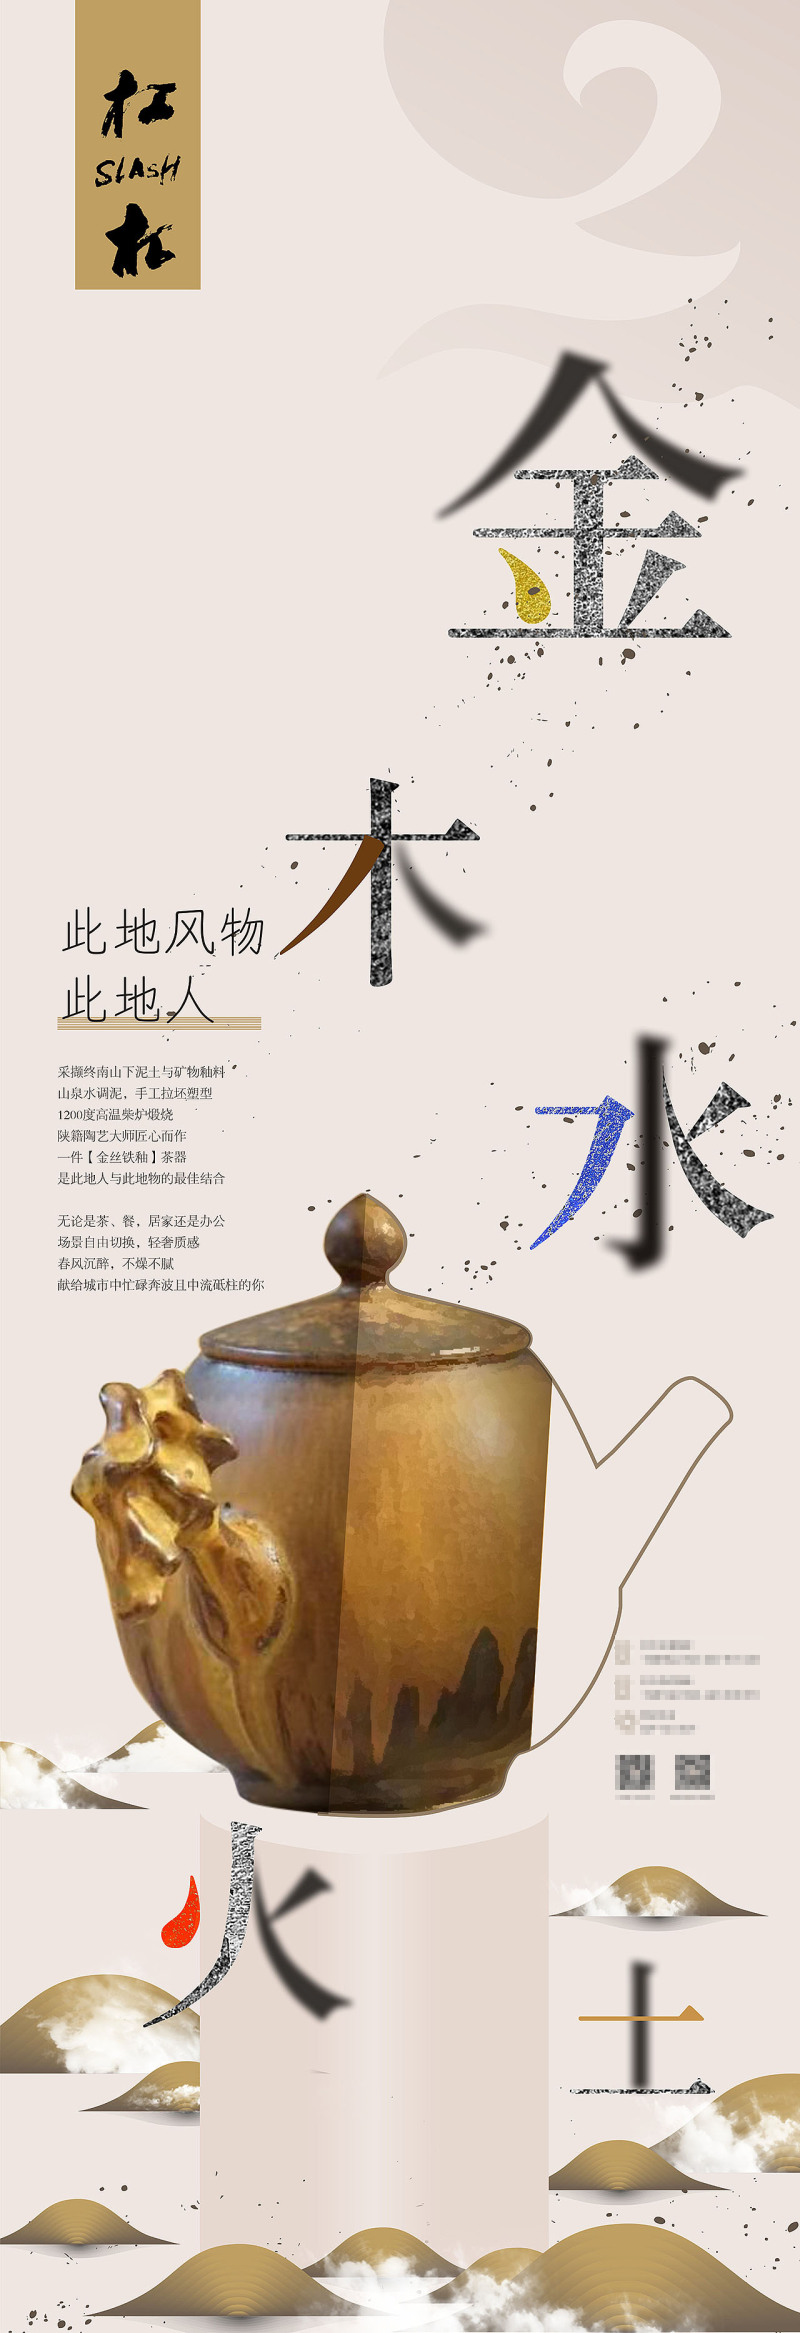 2019唐村杠杠文创店的一组海报设计